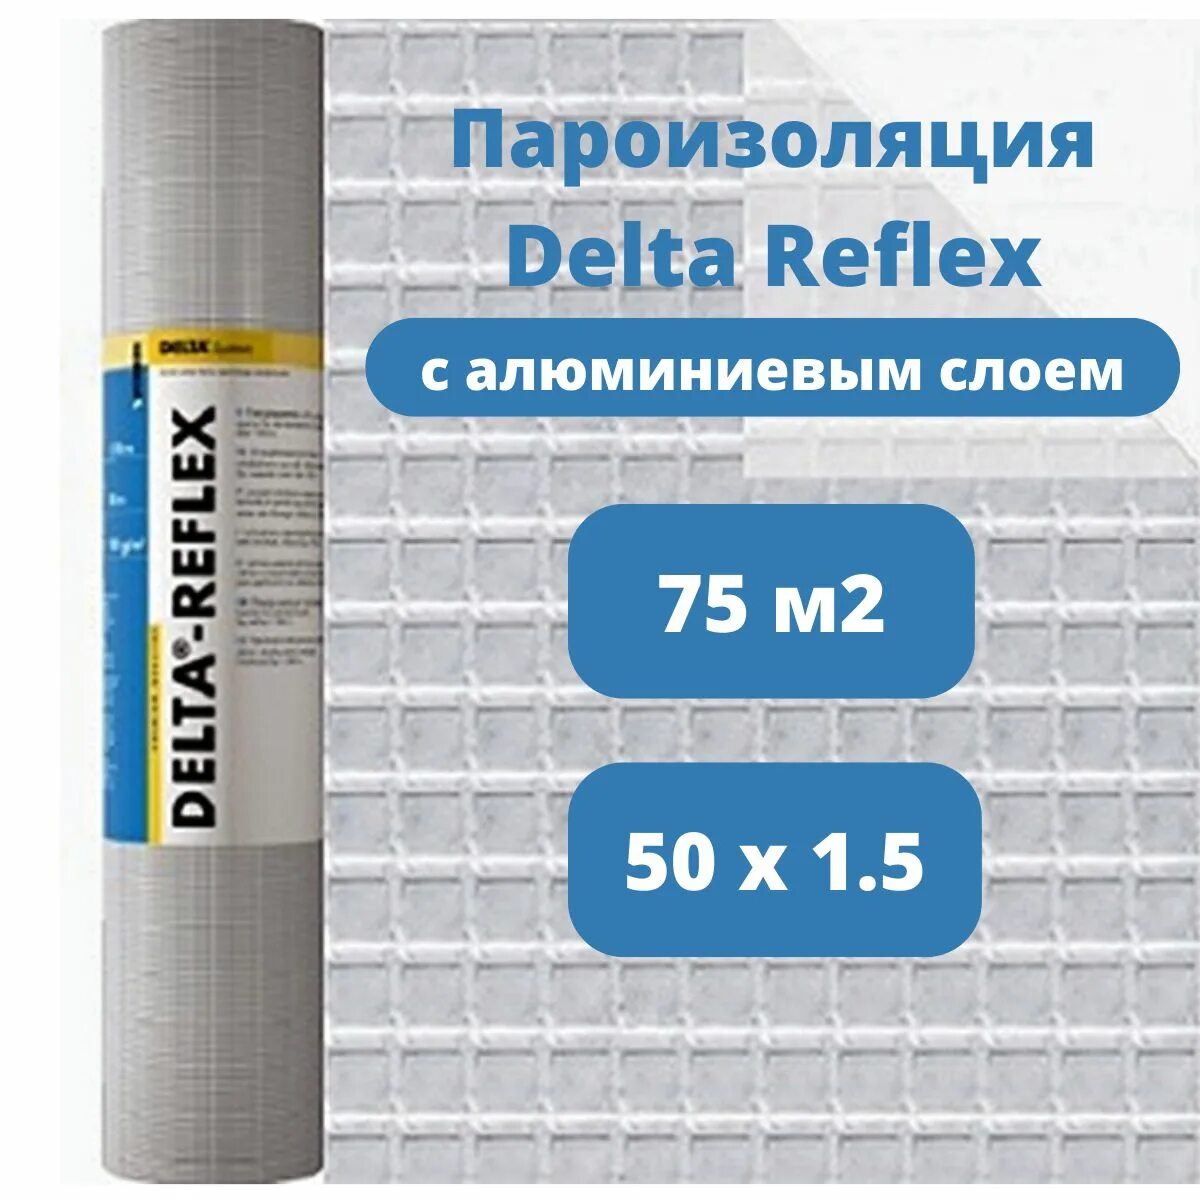 Delta-Reflex пленка с алюминиевым рефлексным слоем. Пароизоляционная пленка Delta Reflex. Пароизоляция фольгированная Delta Reflex. Delta Reflex пленка с алюминиевым слоем 75м2.